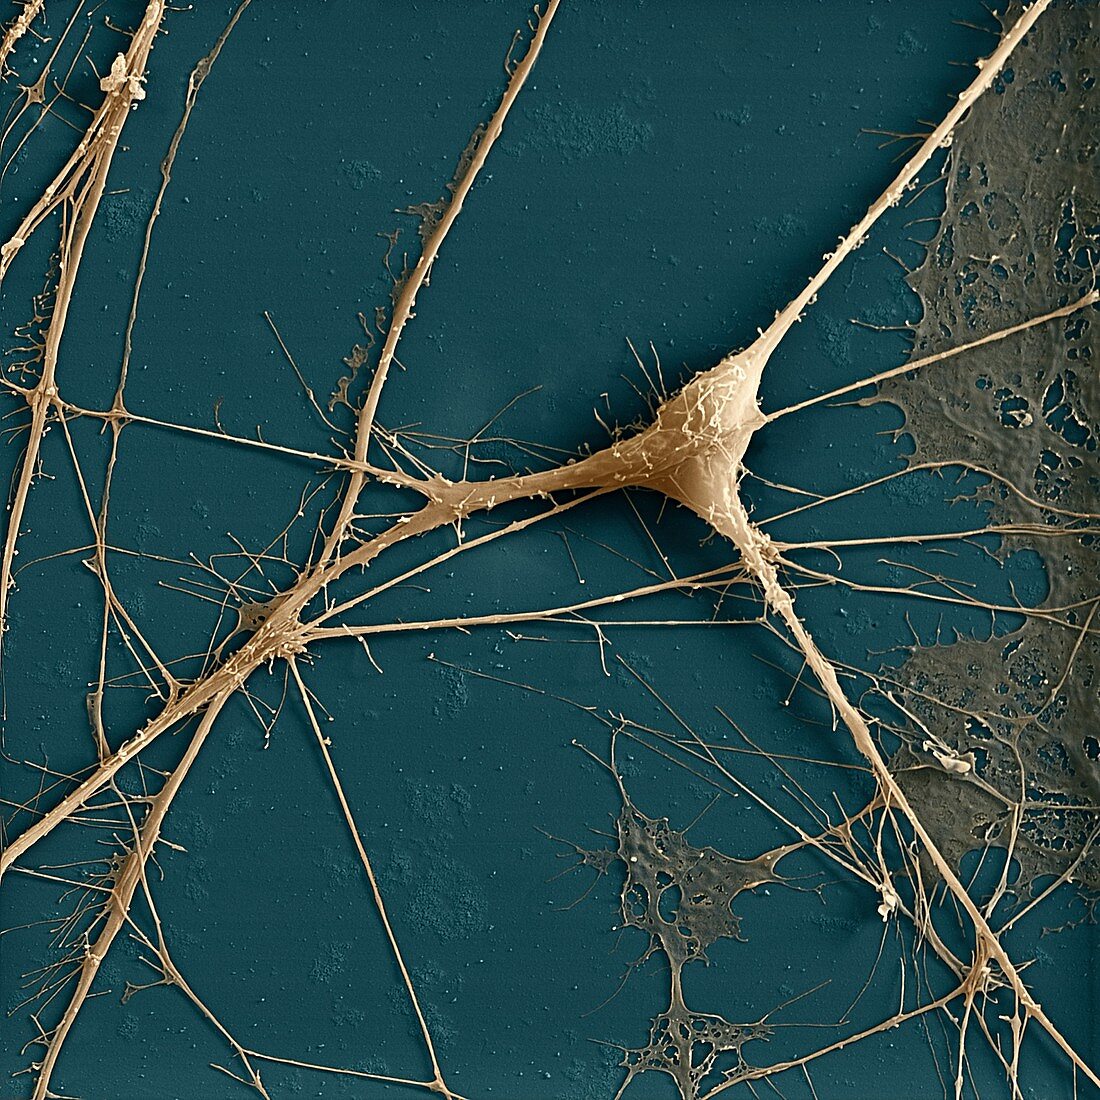 Spinal ganglion nerve cells, SEM